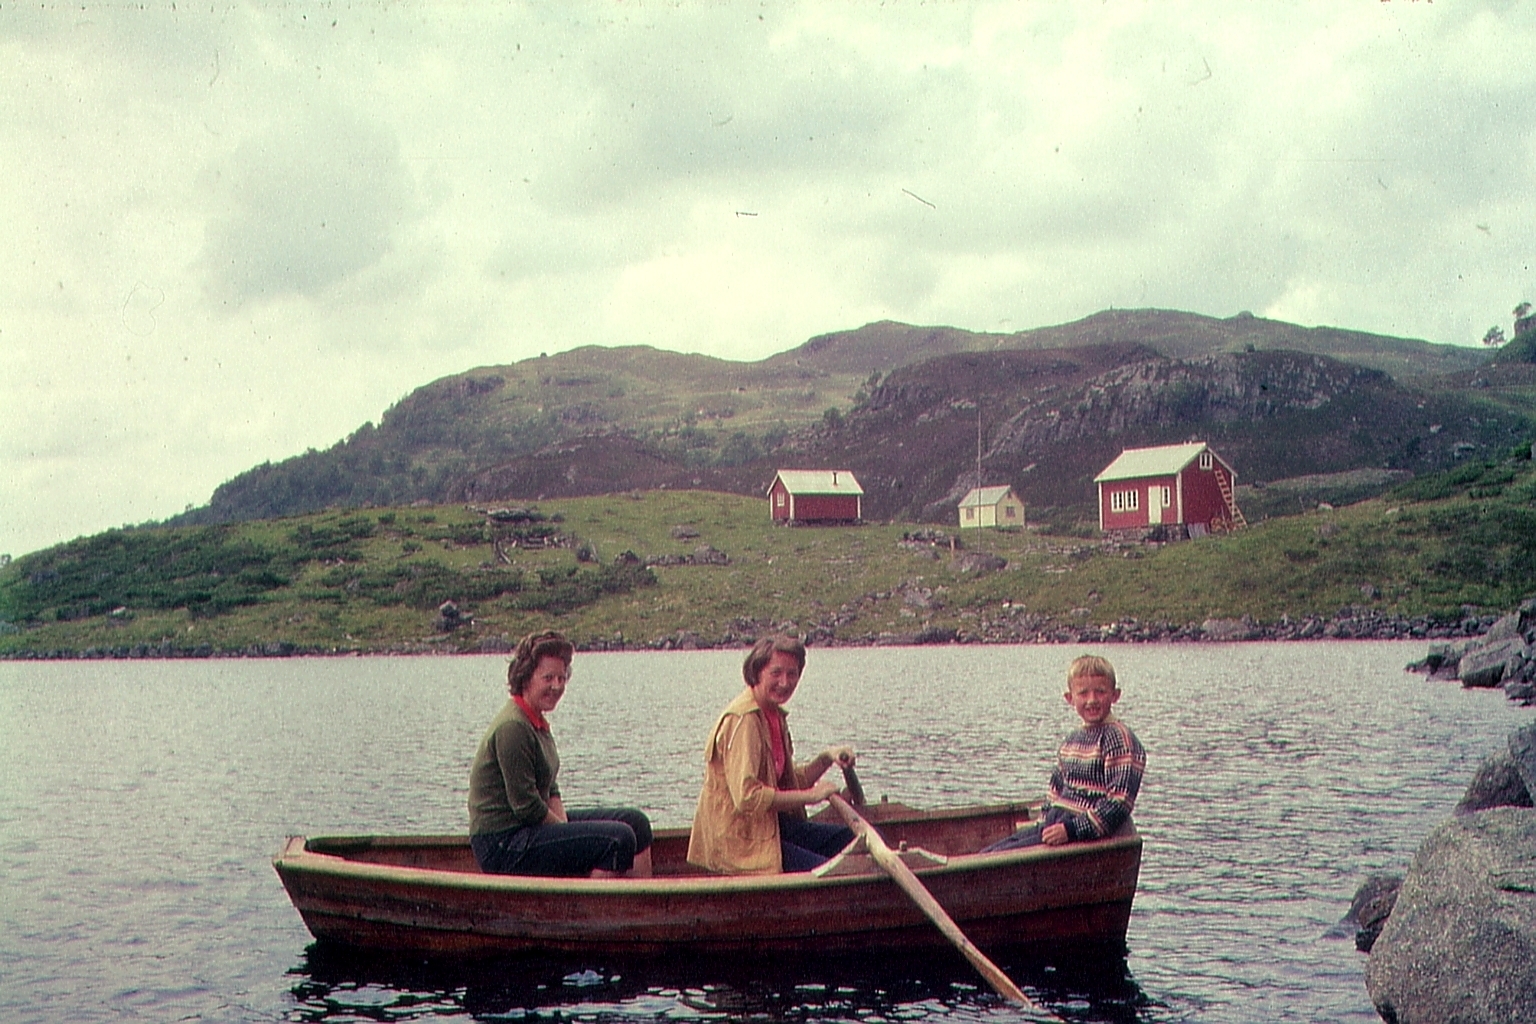 Gammelt bilde av dame som ror båt i brillebutikken Erøy Optikk